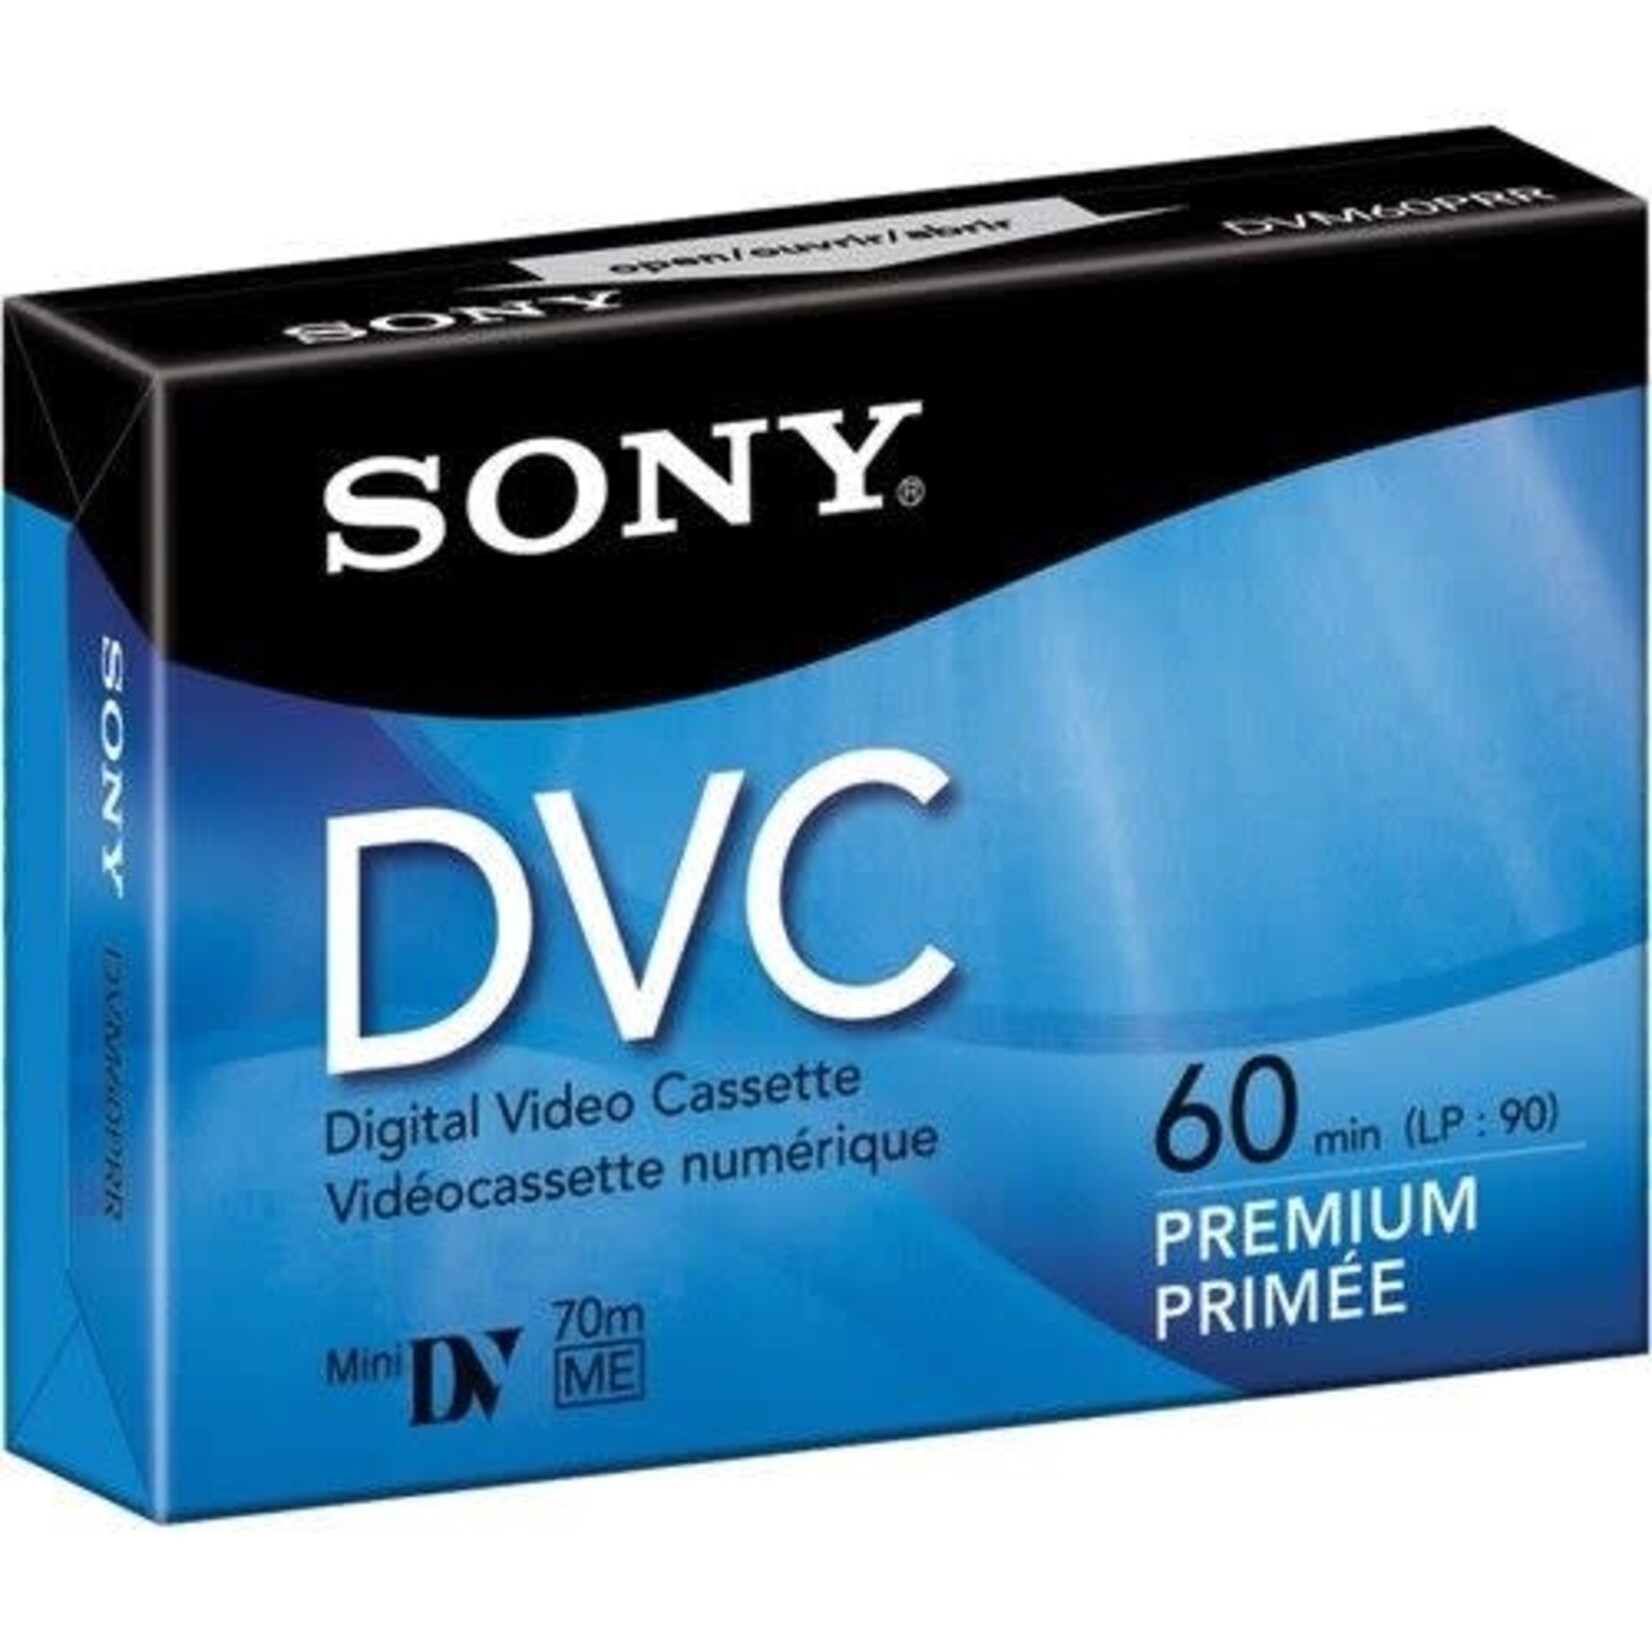 Sony DVC Mini 60min